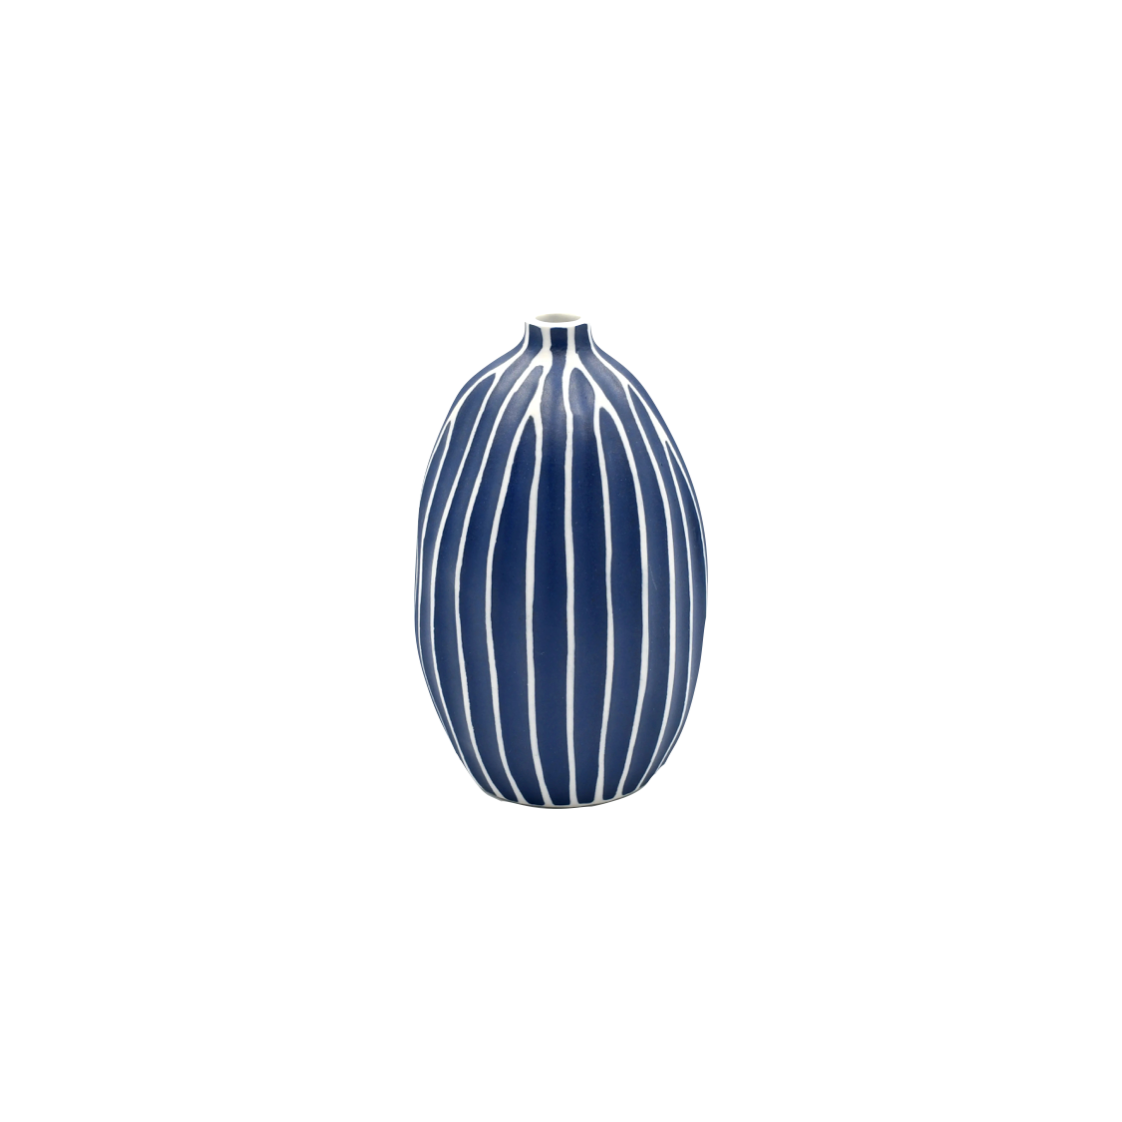 round dark blue vase with white stripes